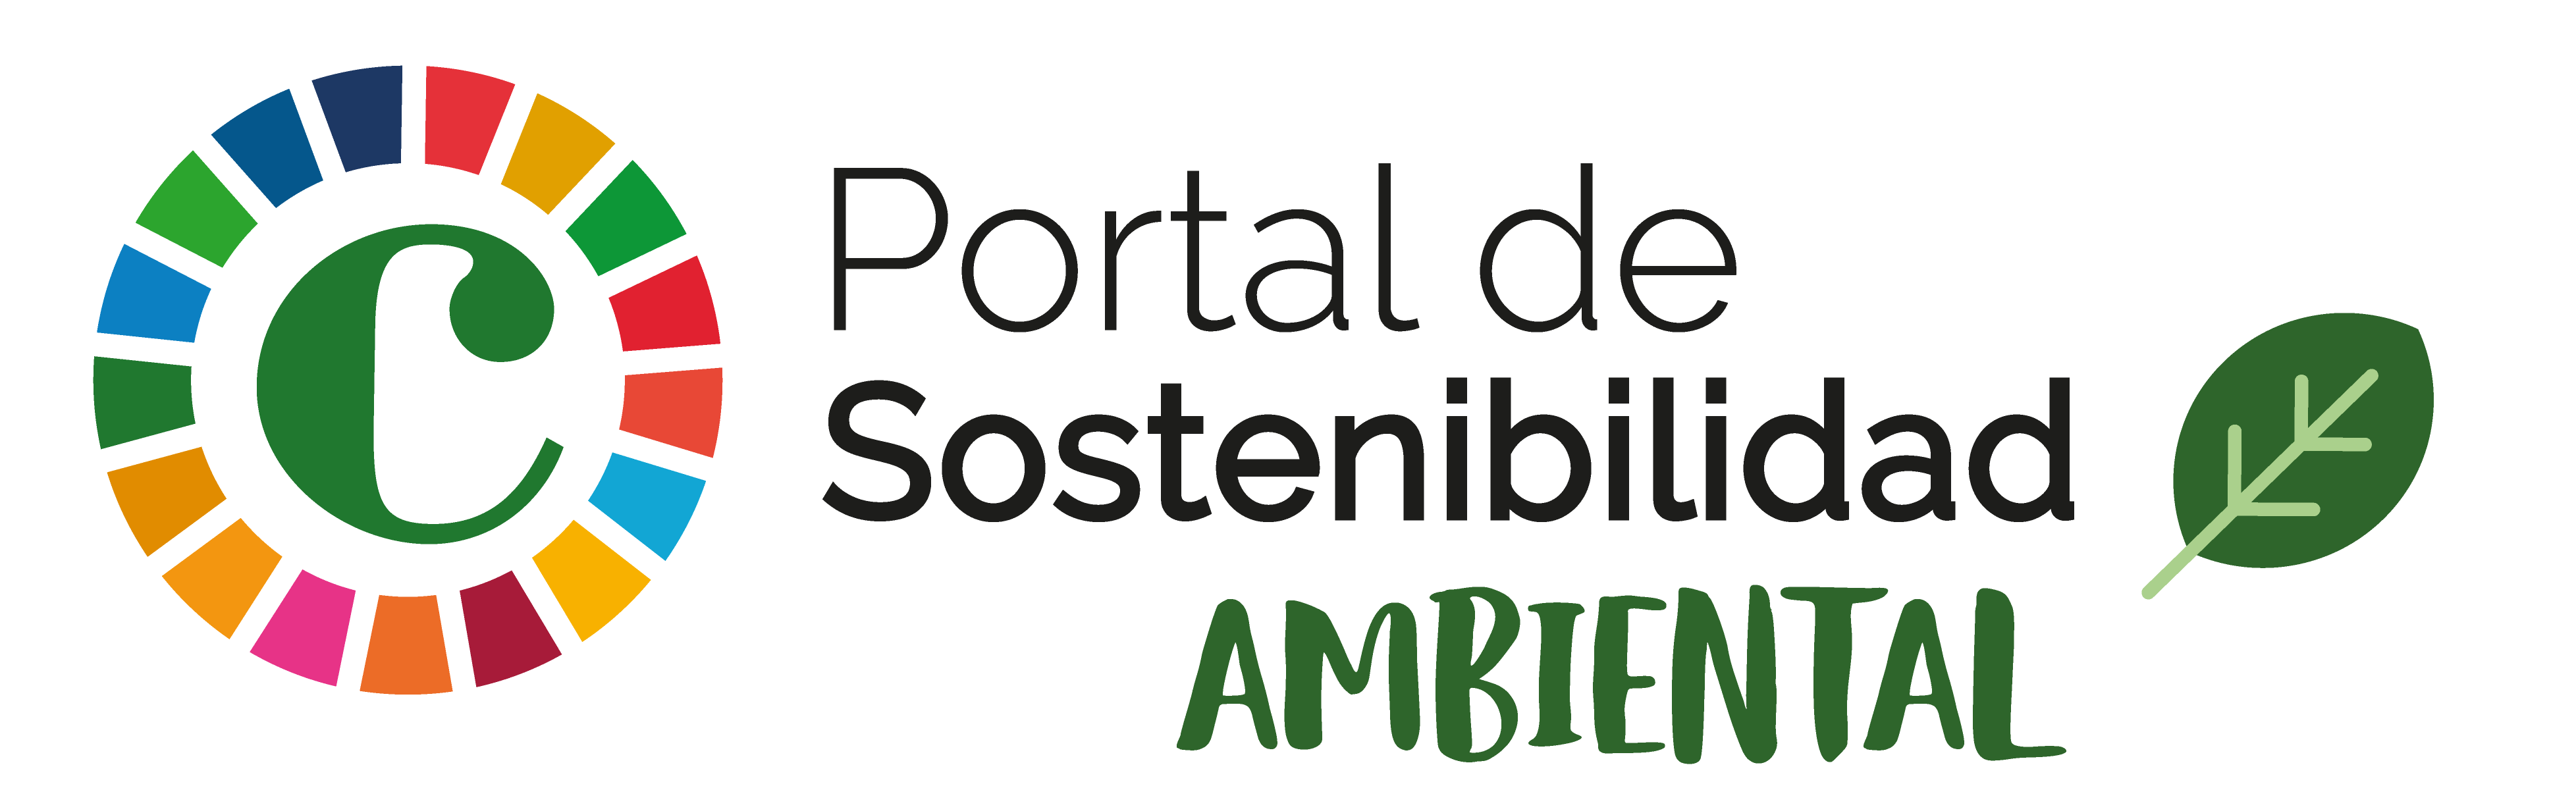 Portal de Sostenibilidad - Cámara de Comercio de Valencia